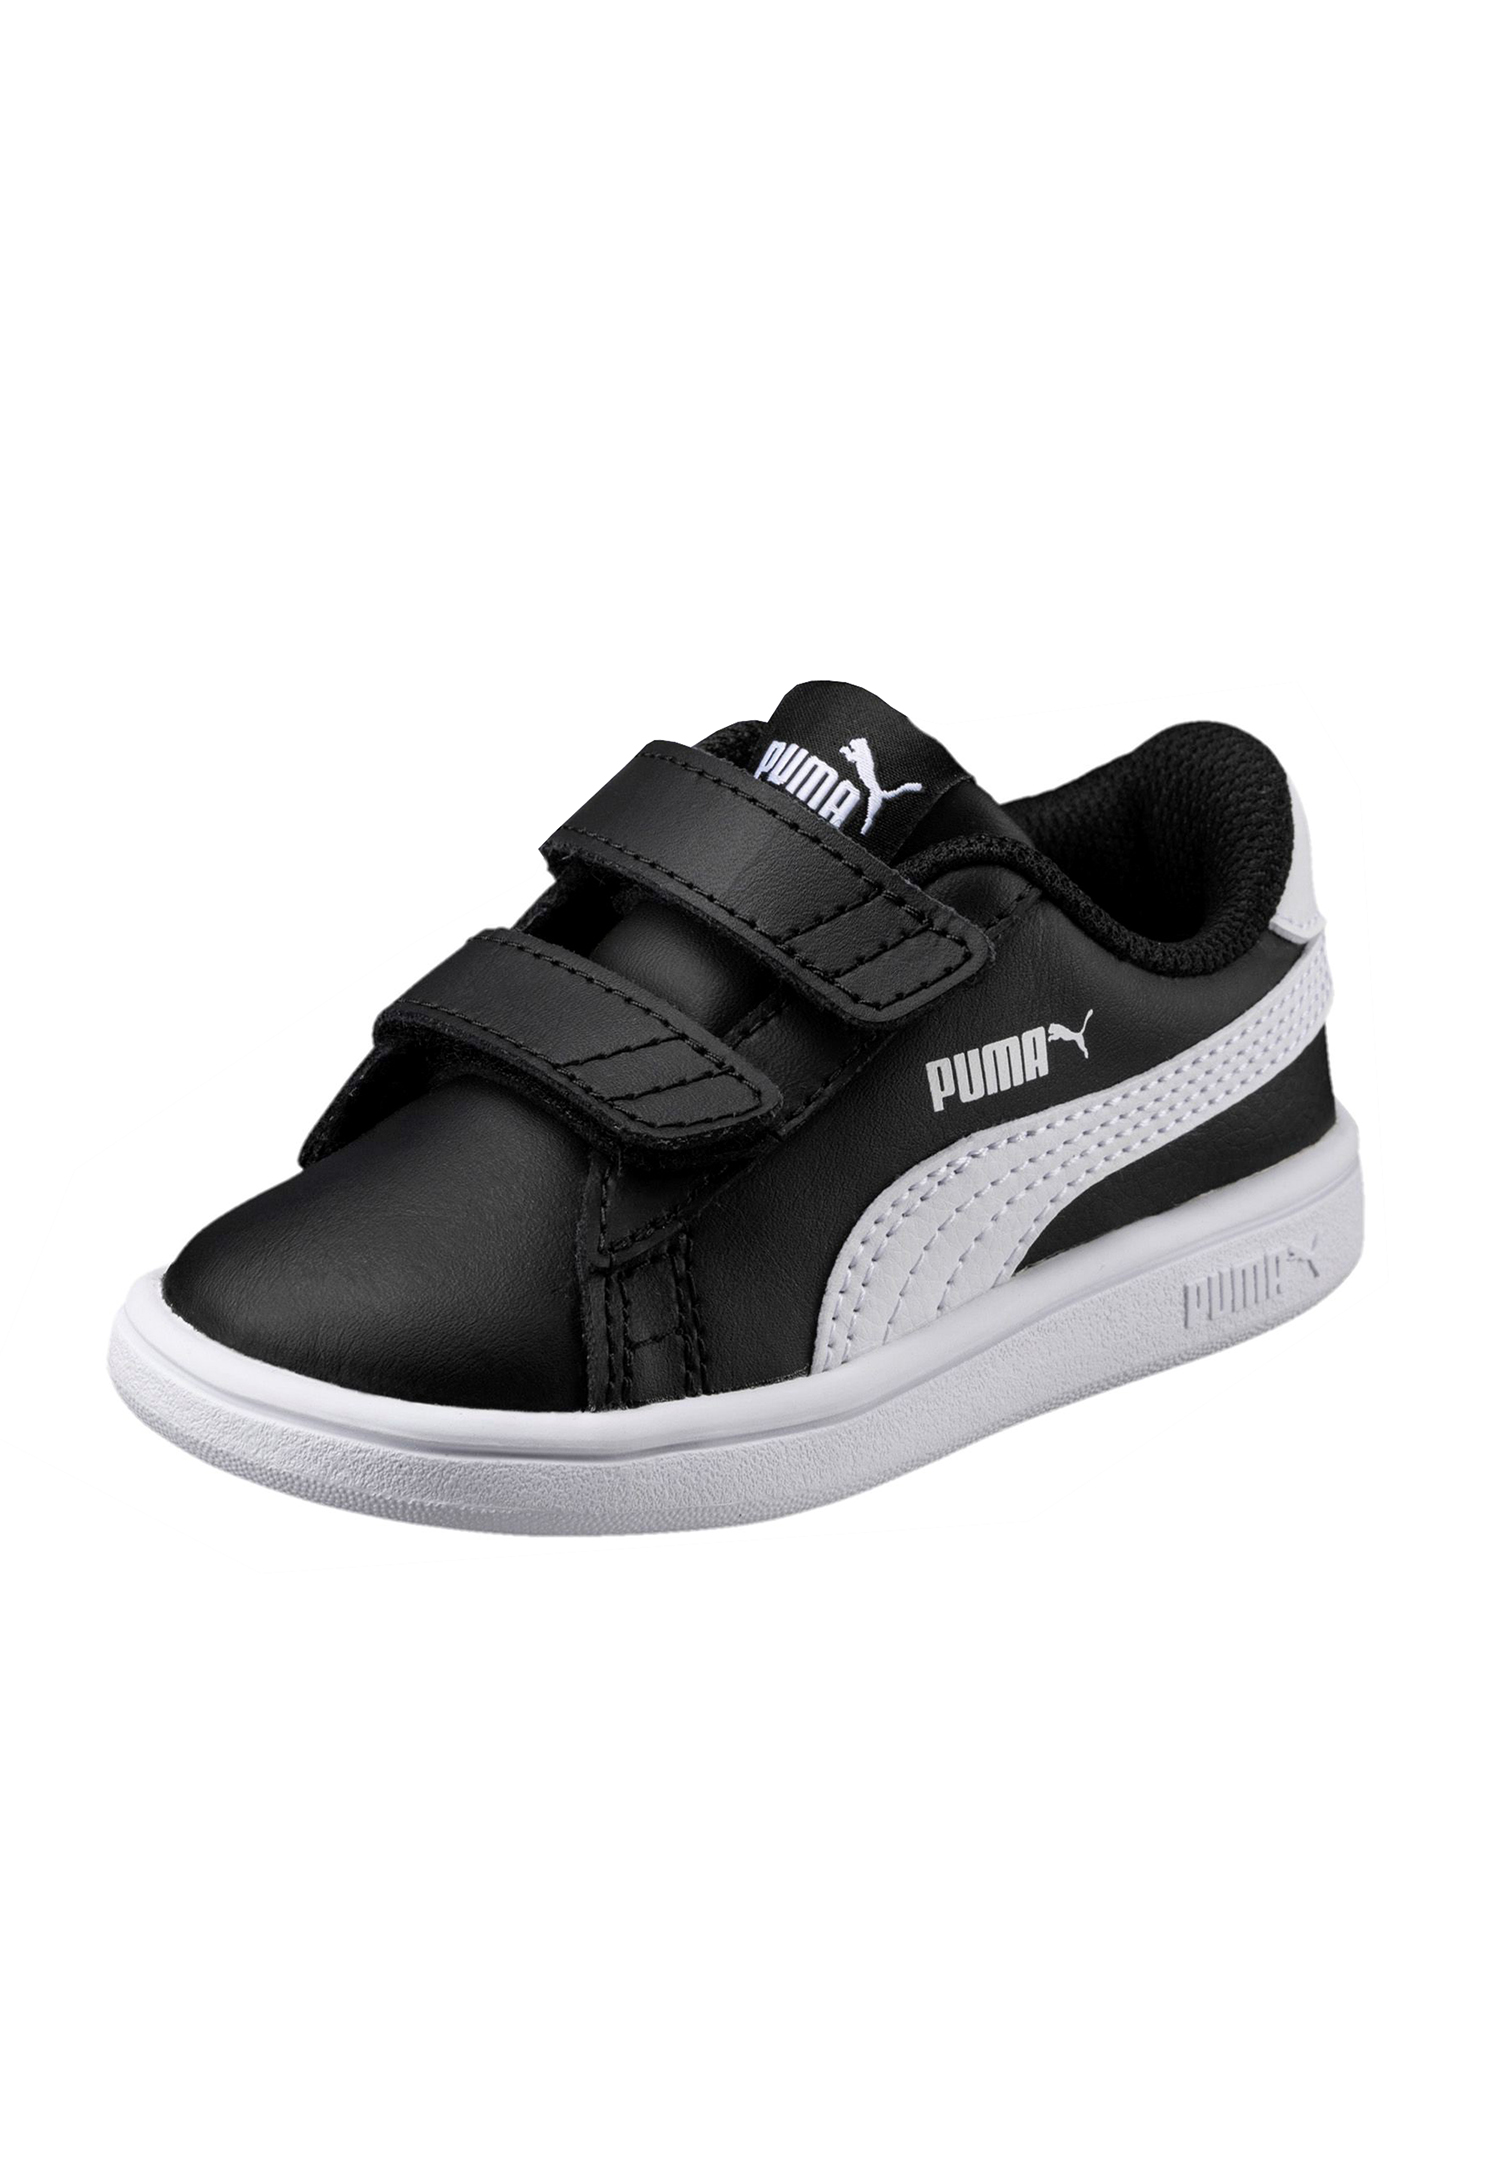 PUMA Smash v2 L V INF Kids Sneaker Schuhe schwarz 365174 03